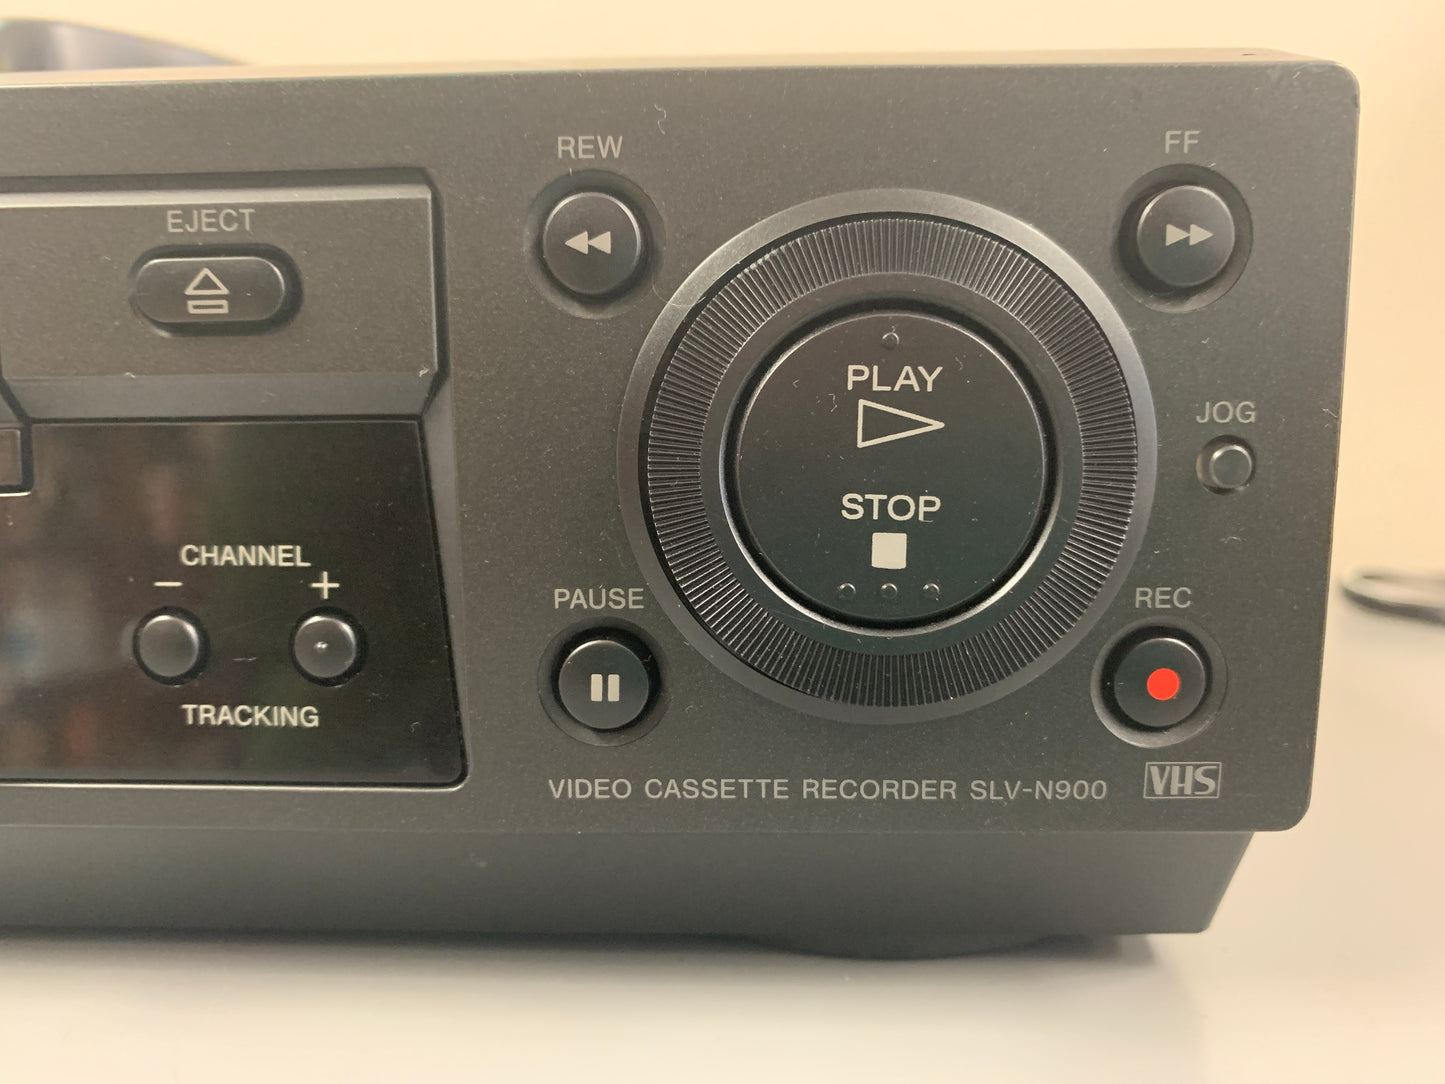 Sony SLV-N900 VCR * Remote